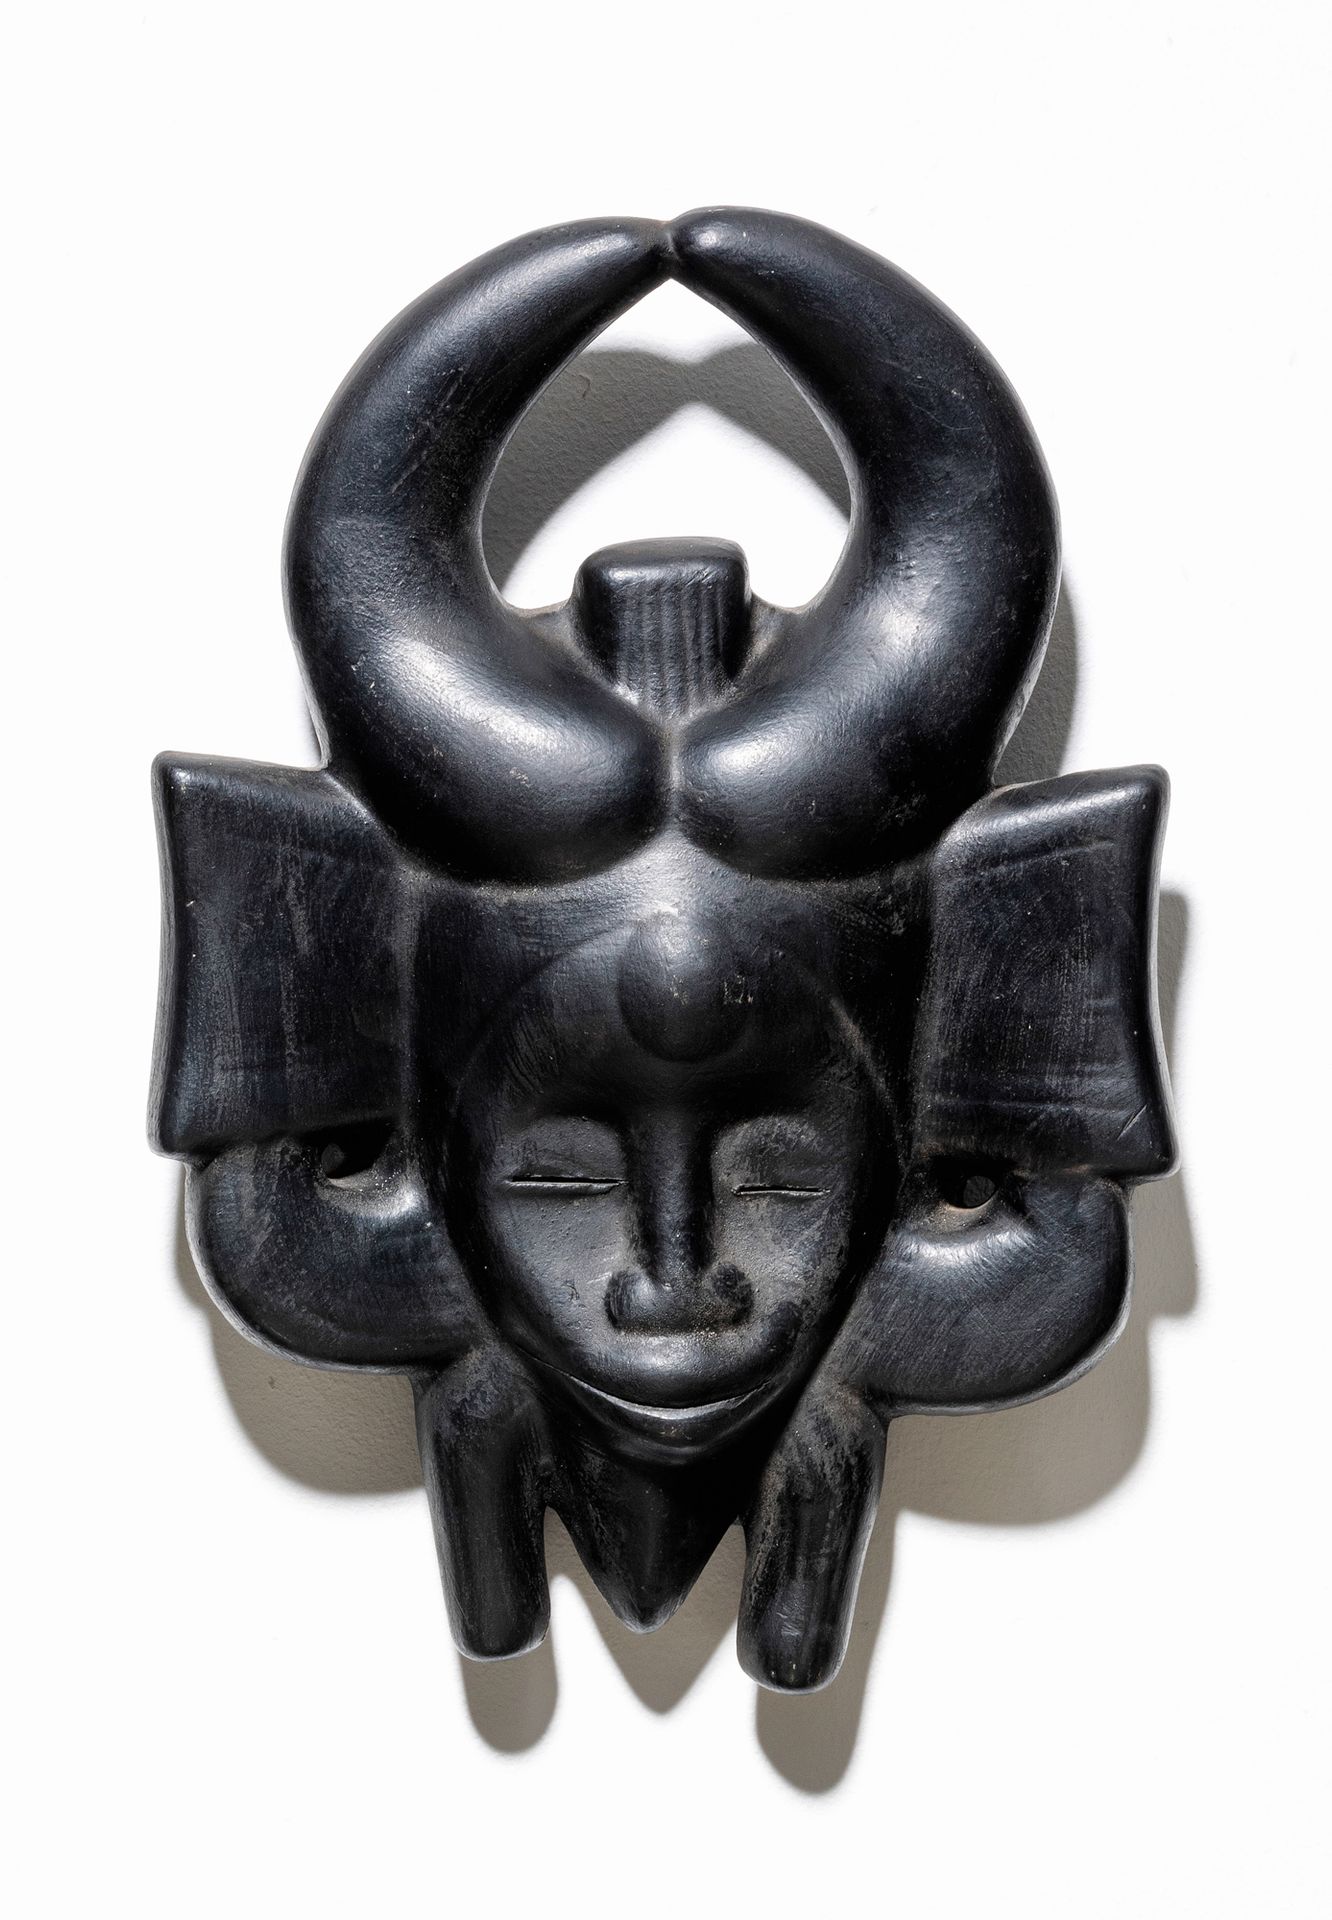 ROGER CAPRON (1906-1983) 面具
釉面陶瓷。
掩饰
Geglazuurde keramiek。
约1965年。
高36厘米，长26厘米